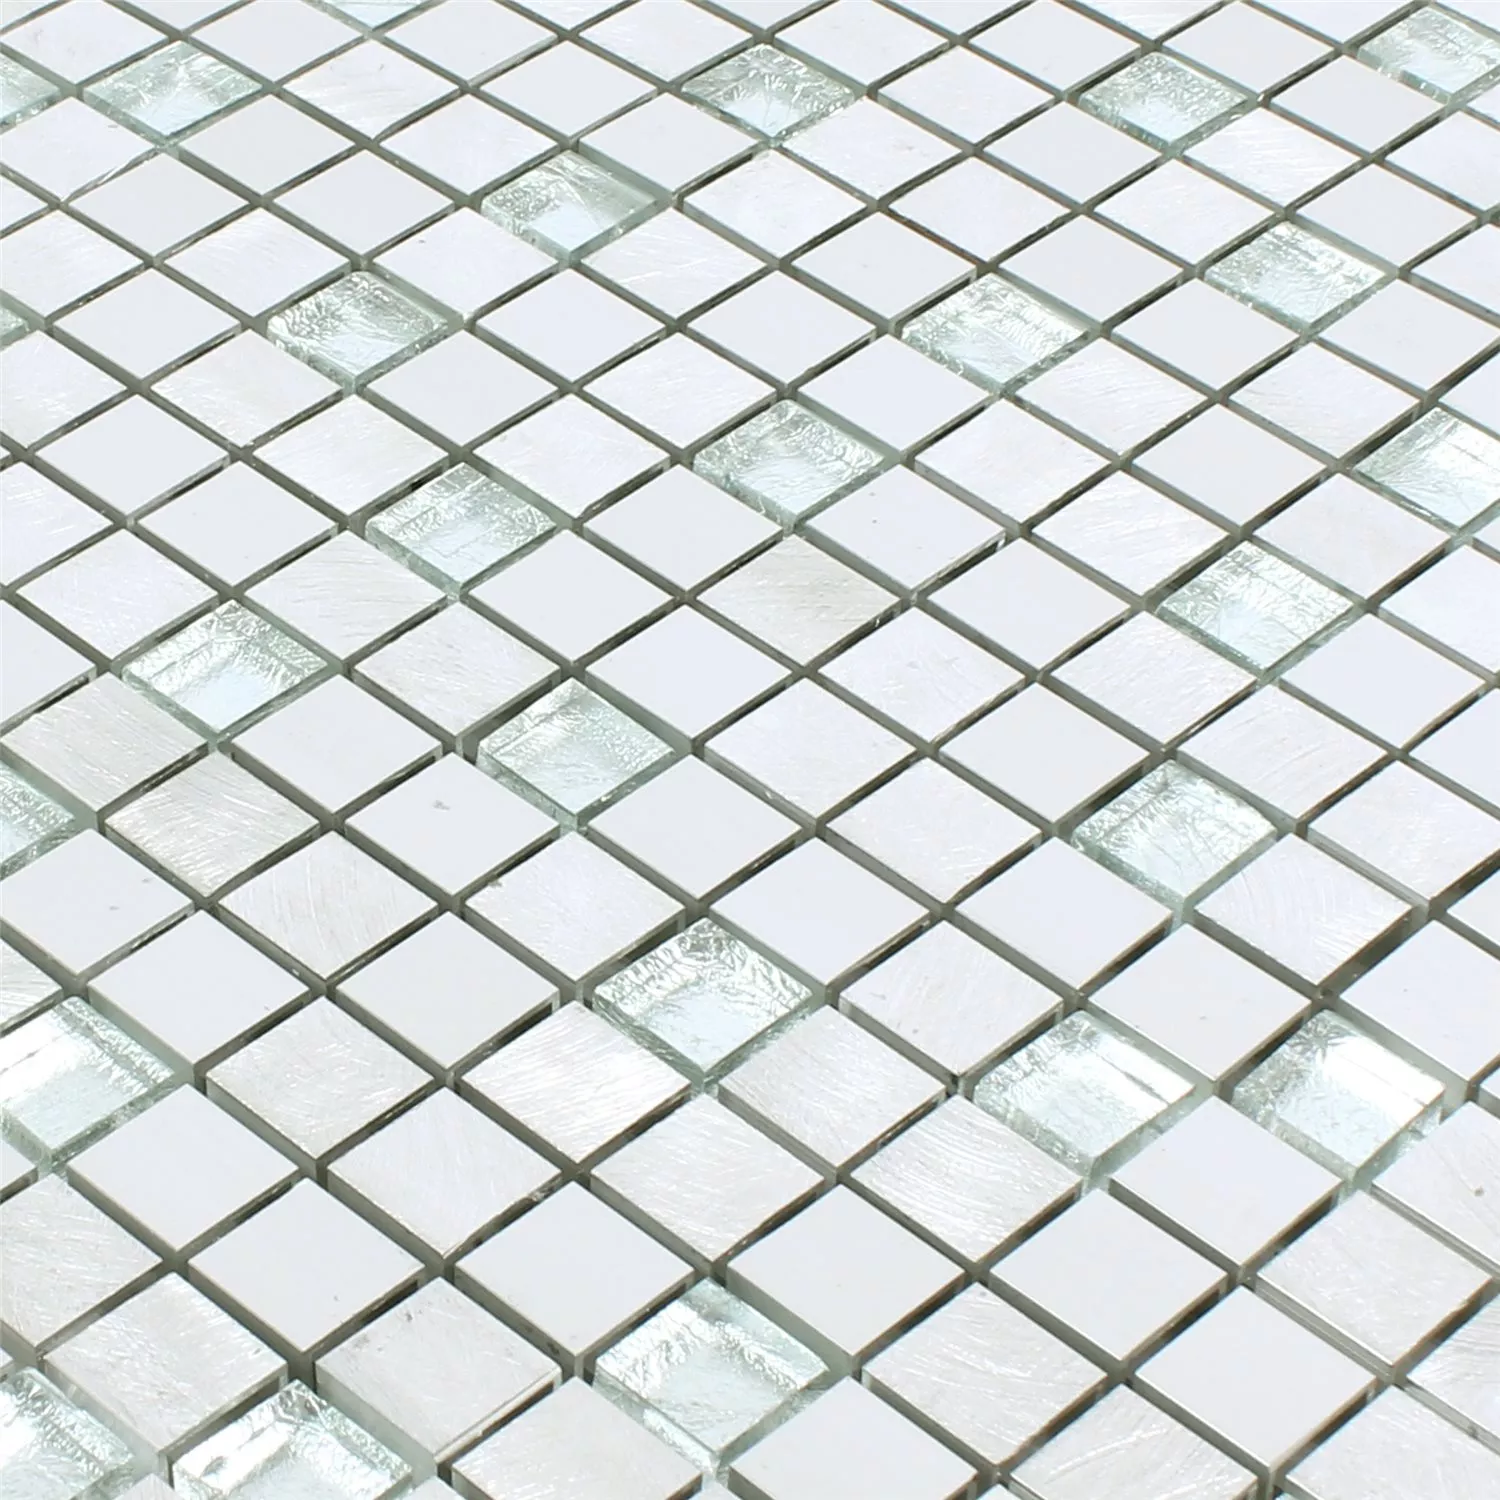 Sample Mosaic Tiles Lissabon Aluminium Glass Mix Silver